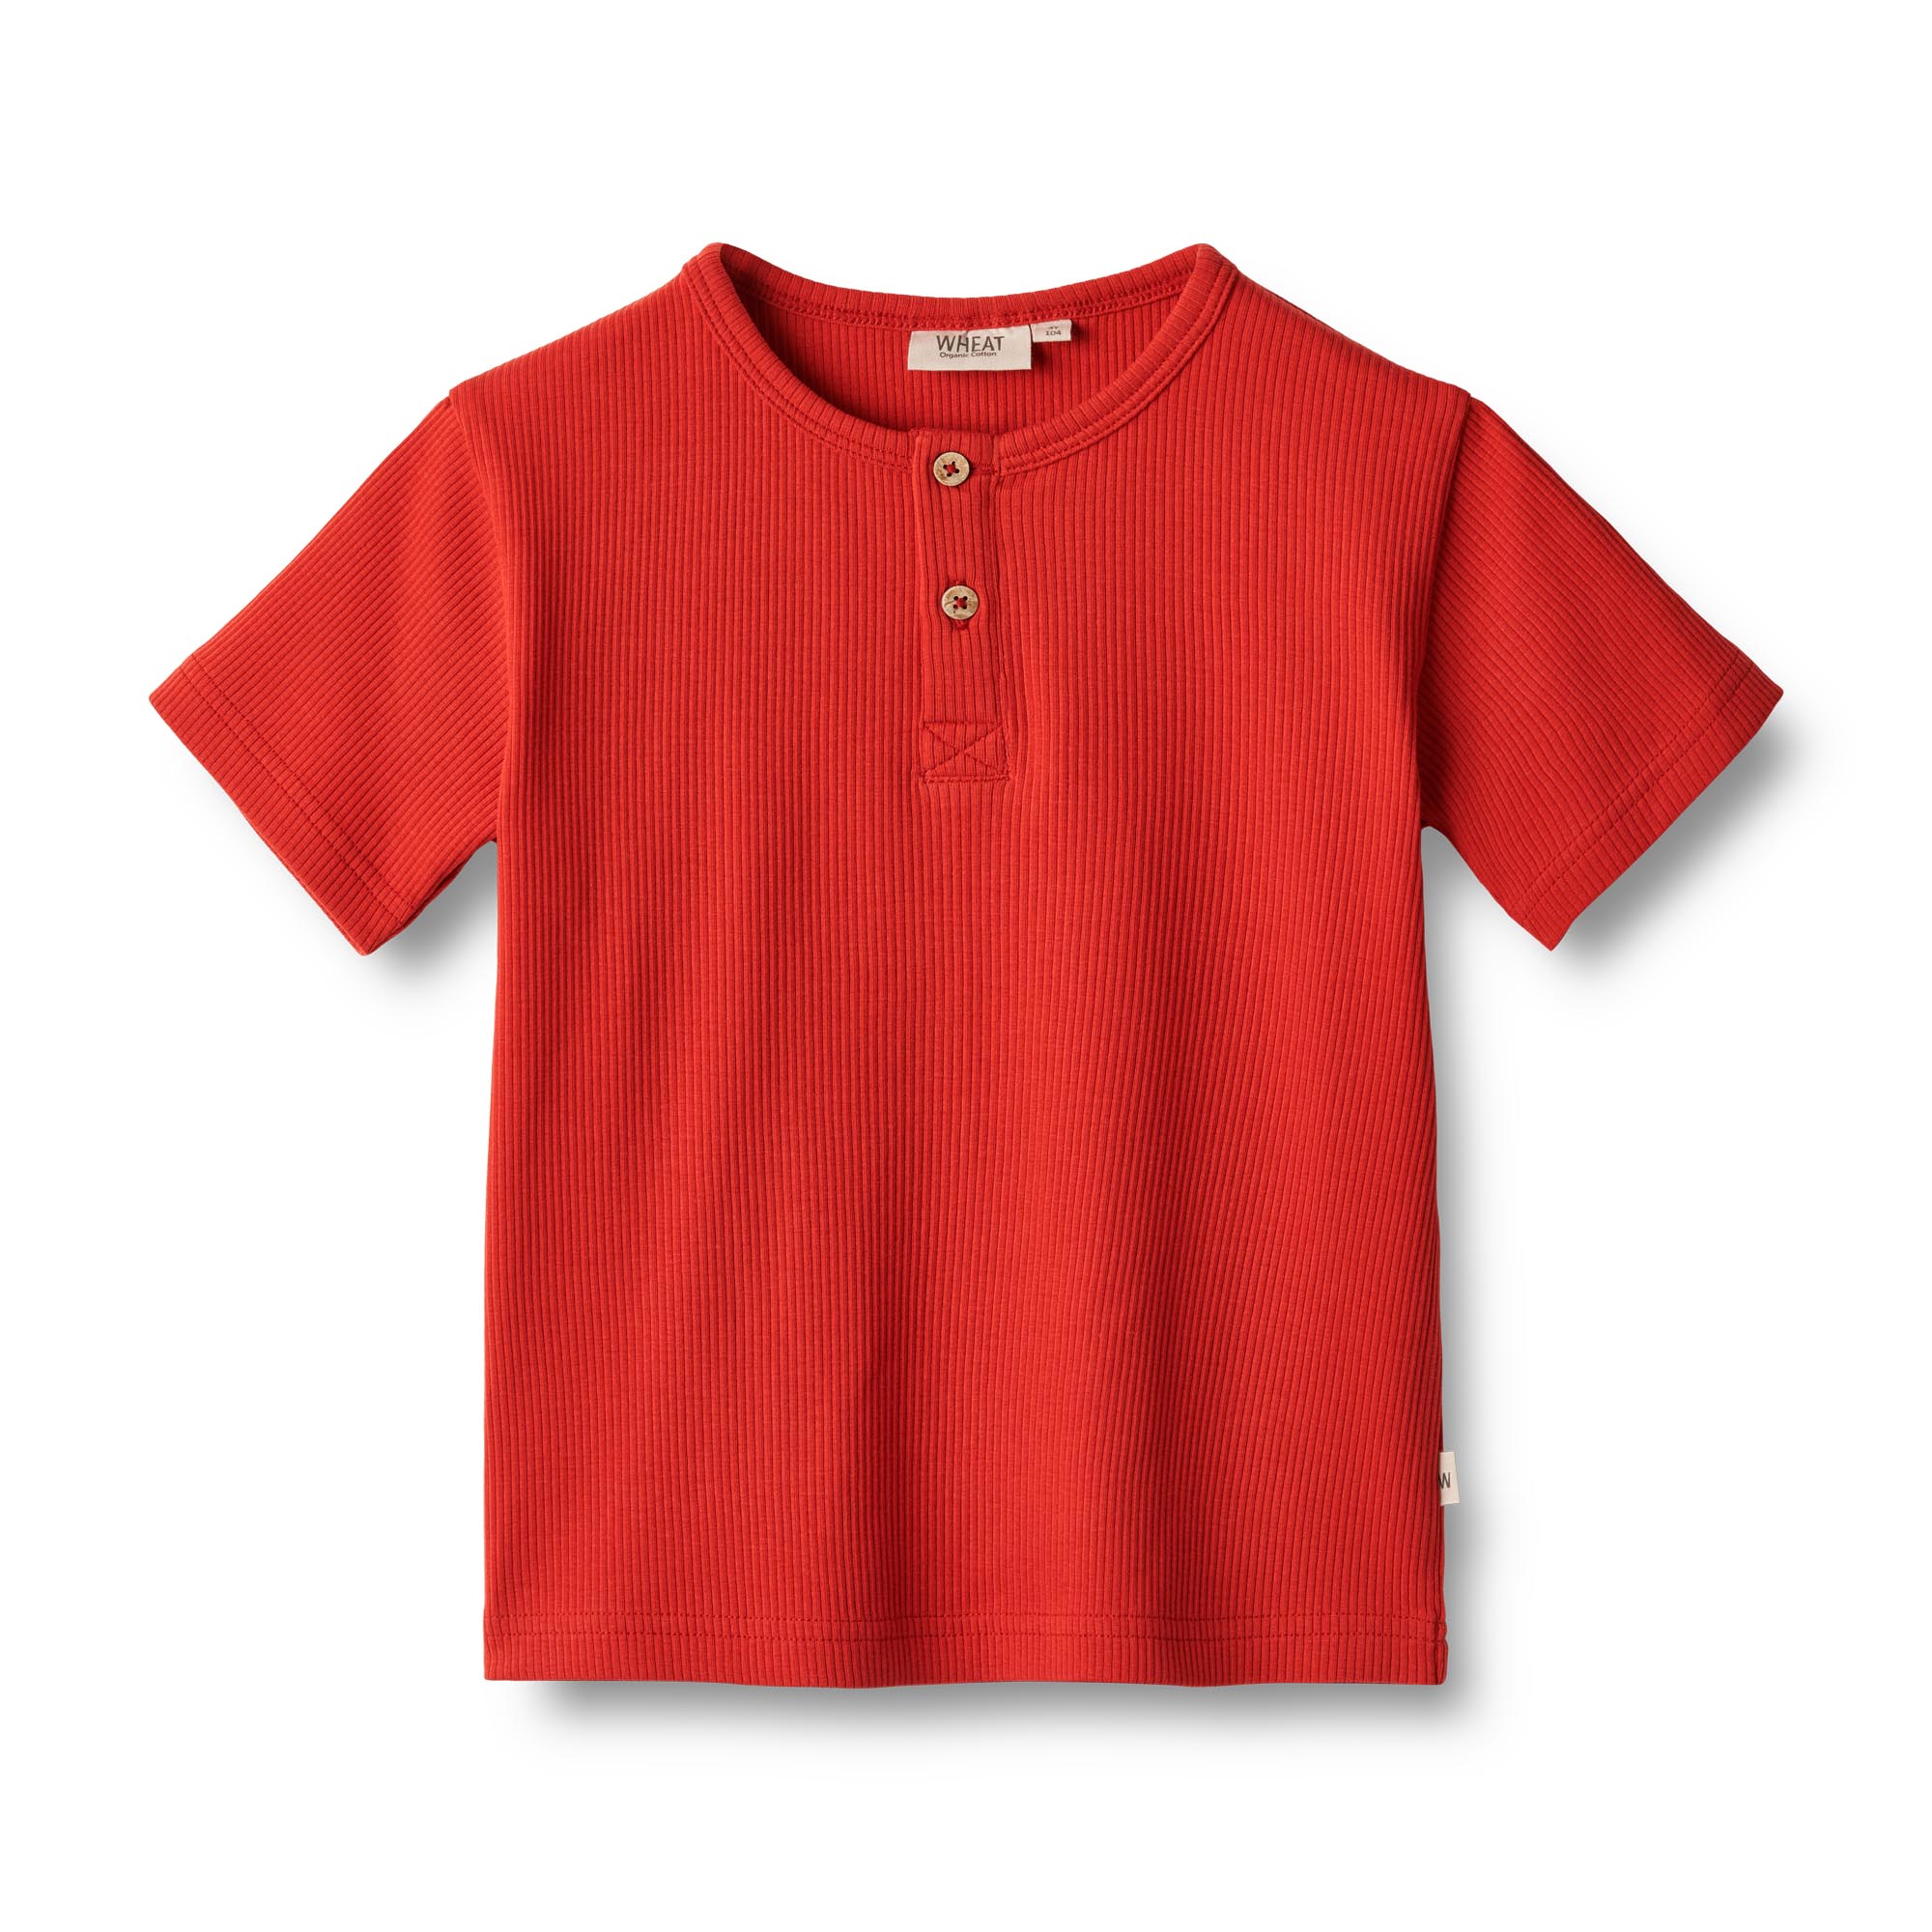 Jeff&Joy-Wheat-T-Shirt-Lumi-2072-red